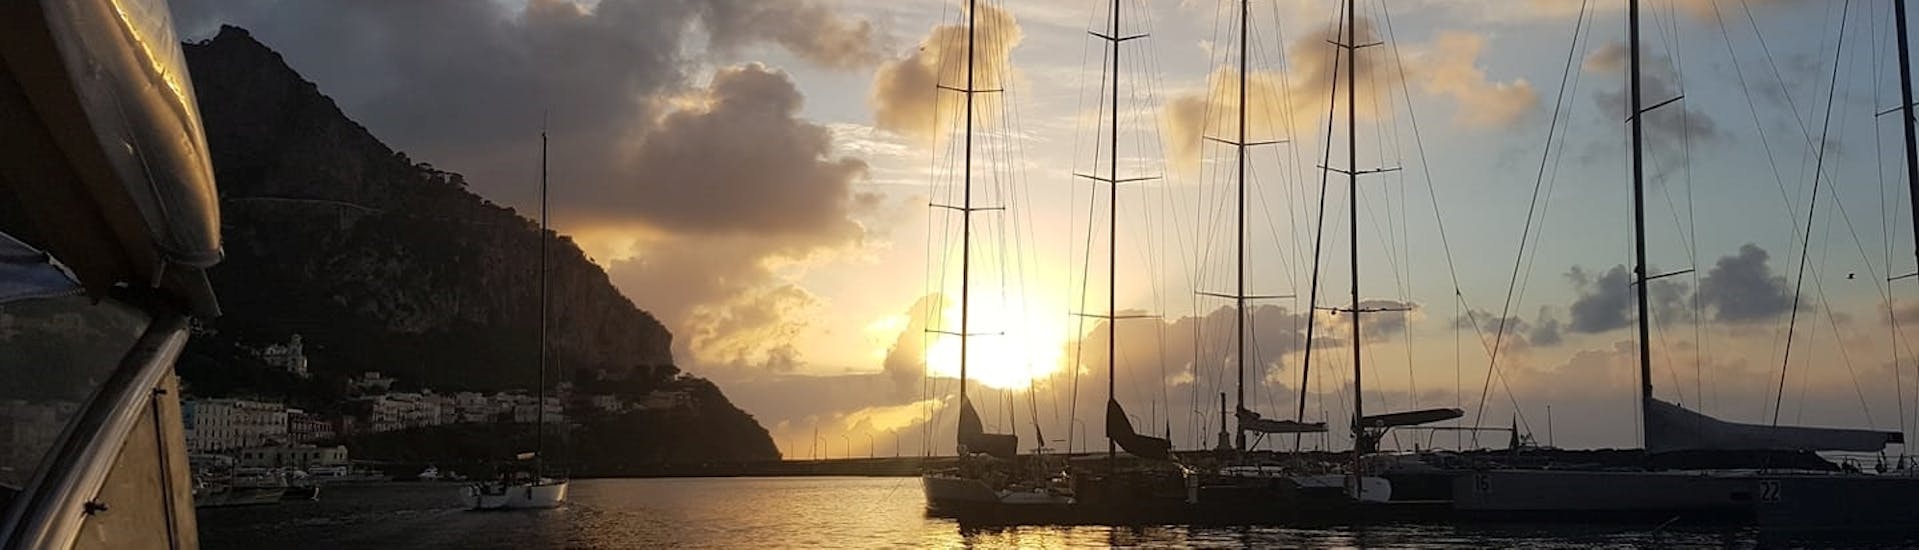 De boot vaart langs de kust van Sorrento voor de privéboottocht bij zonsondergang van Sorrento naar Capri.